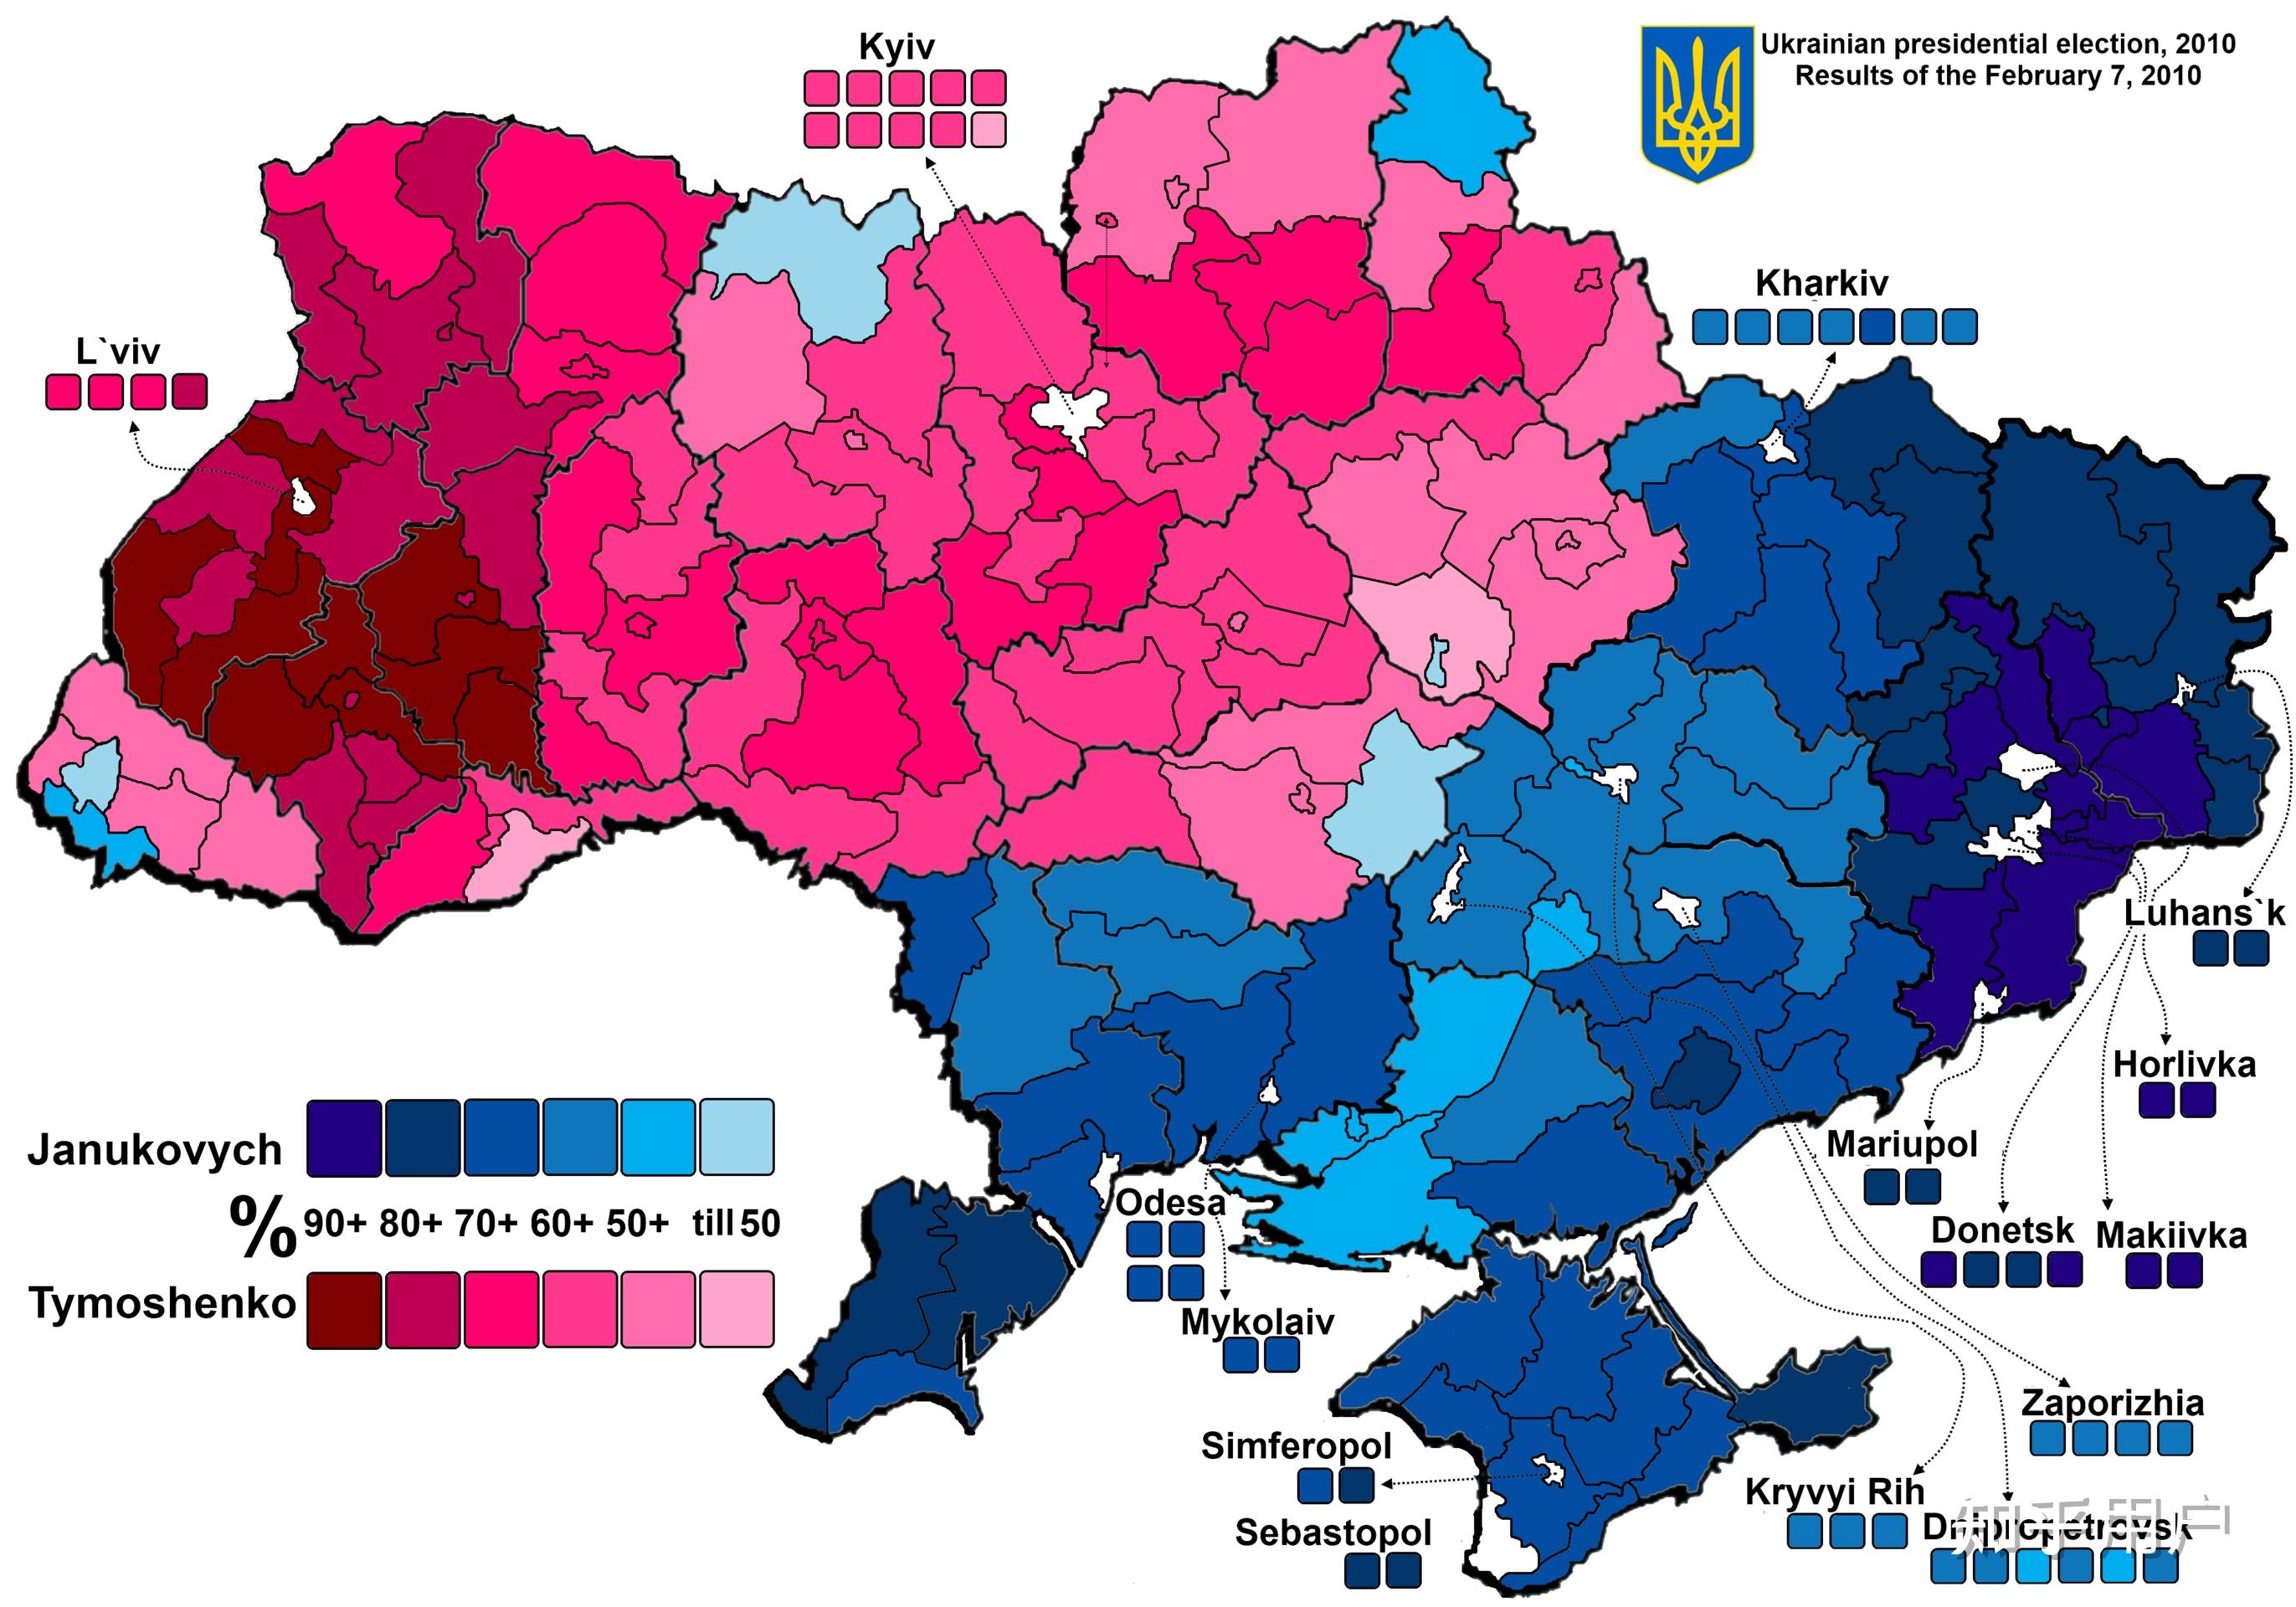 您支持俄罗斯借去军事化,去纳粹化为名,将乌克兰